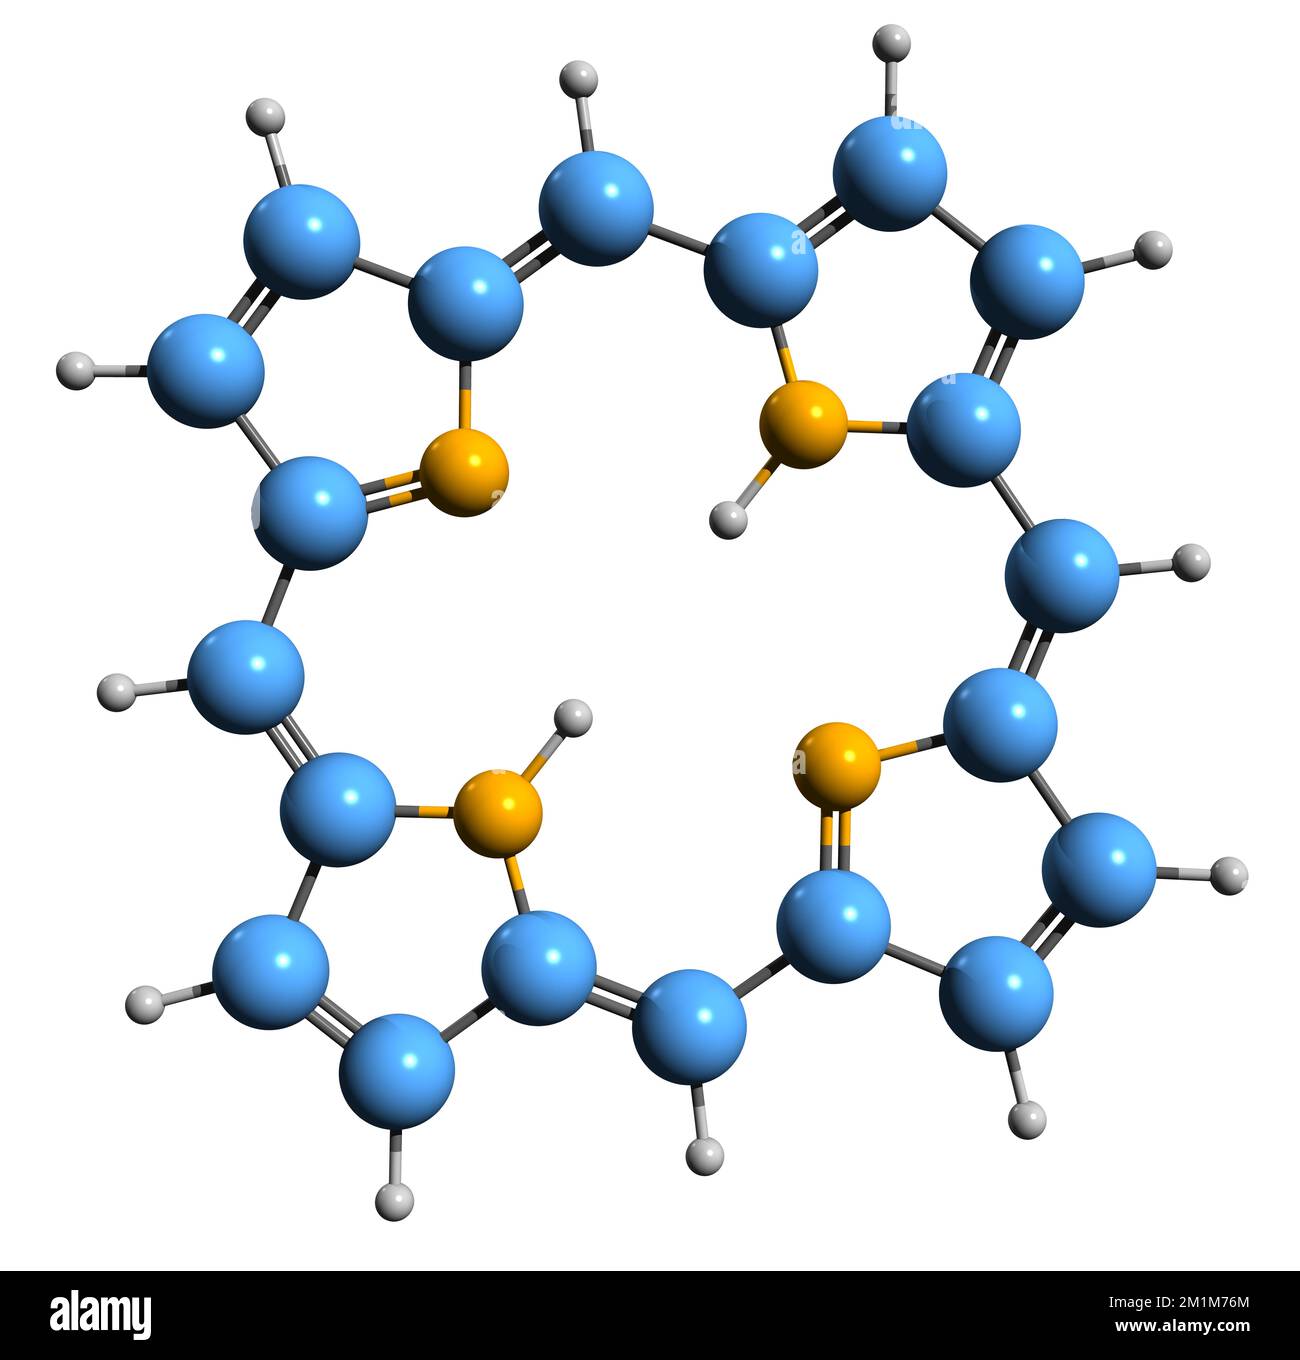 3D-Bild einer Porphyrin-Skelettformel - molekularchemische Struktur einer heterocyclischen organischen Makrozyklenverbindung, isoliert auf weißem Hintergrund Stockfoto